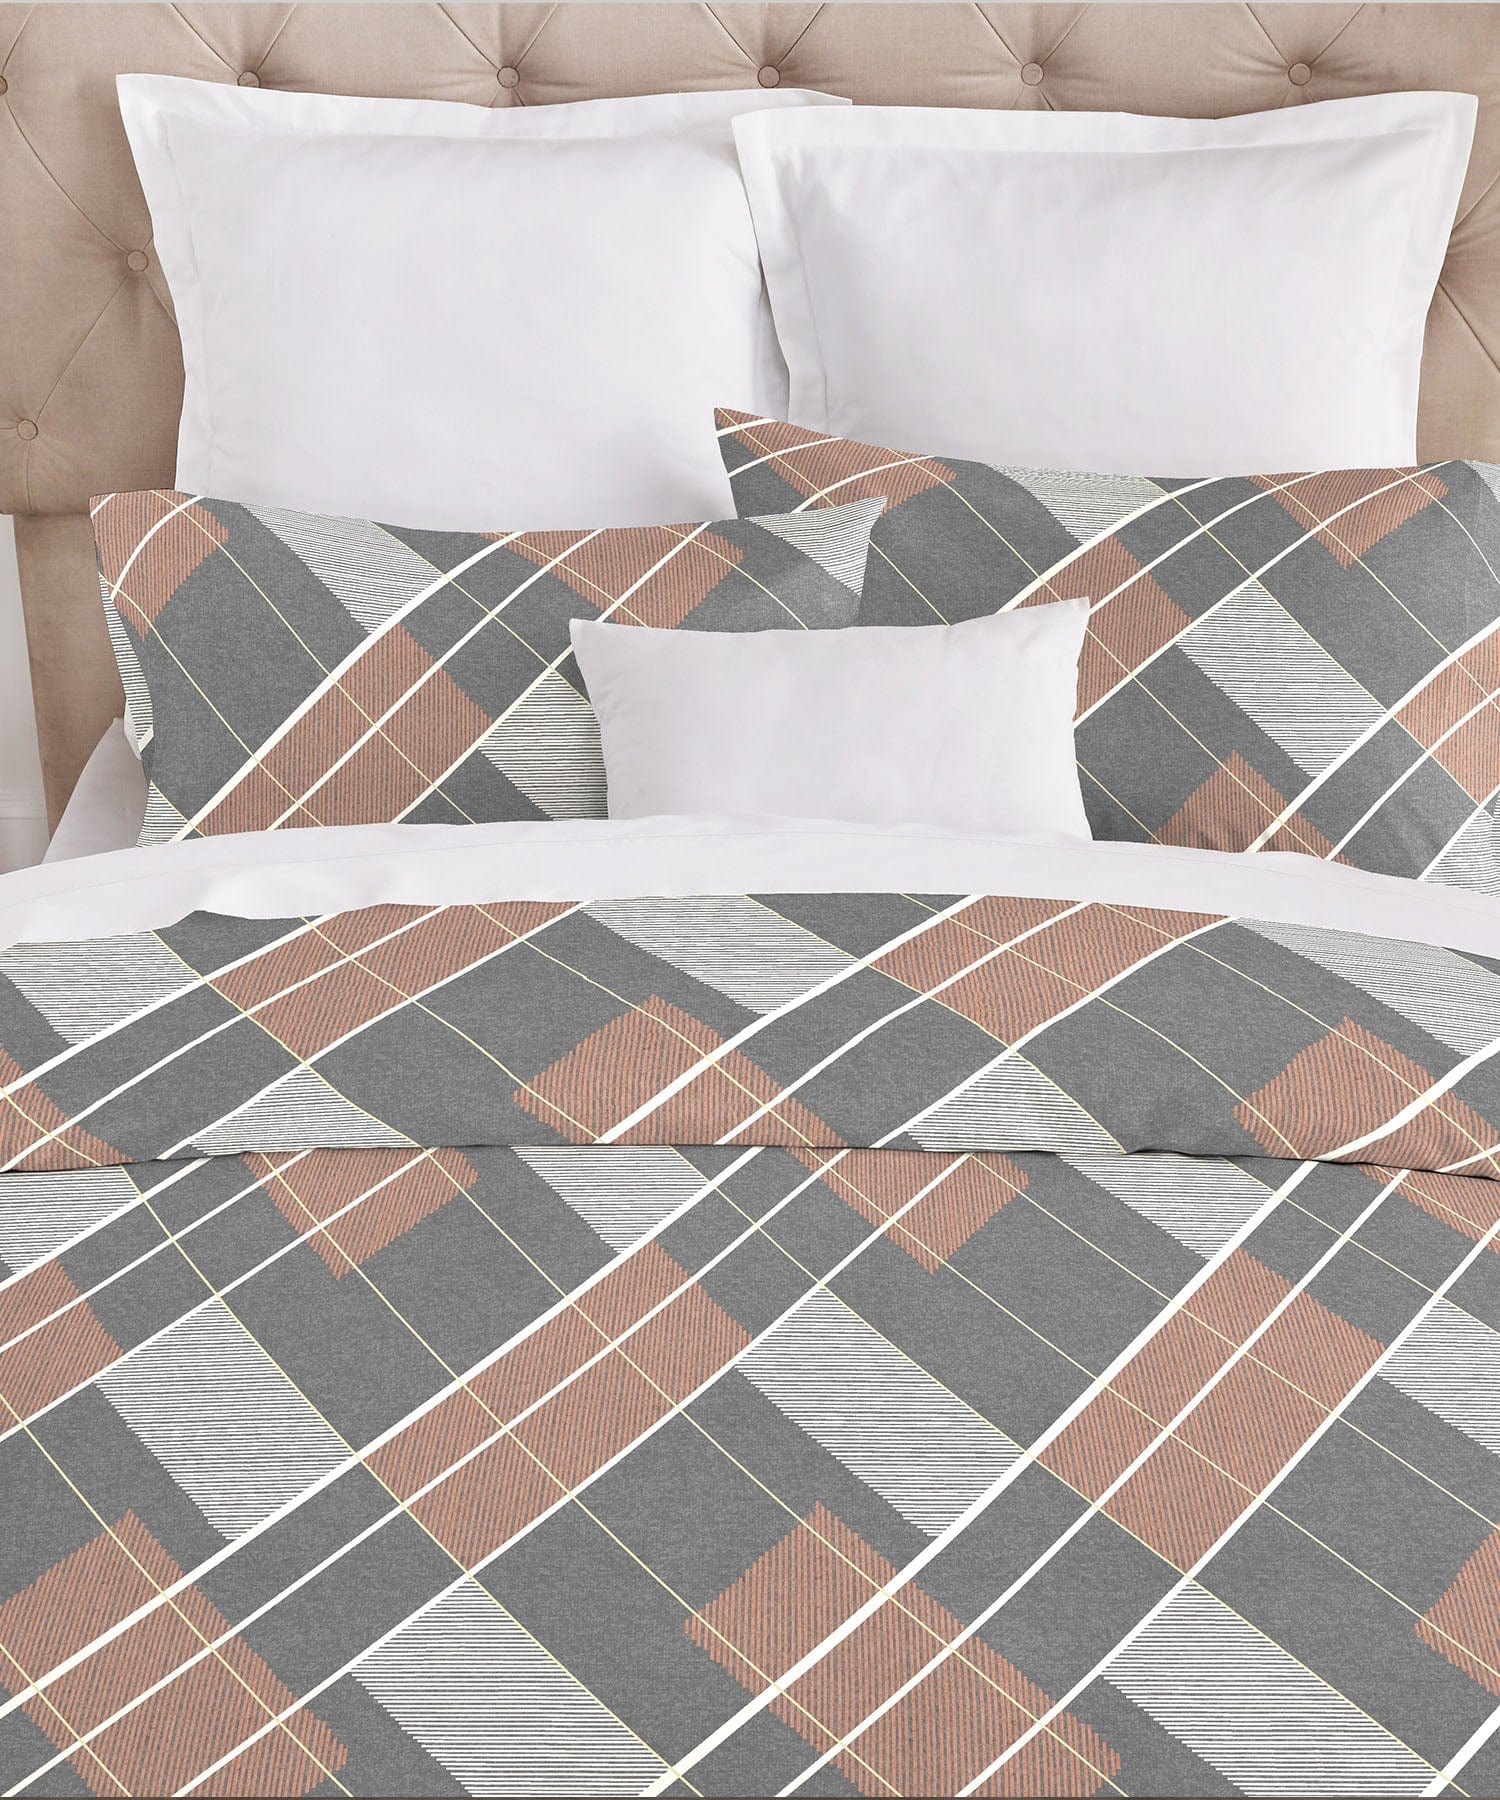 Double Bedsheet ₹1599/-